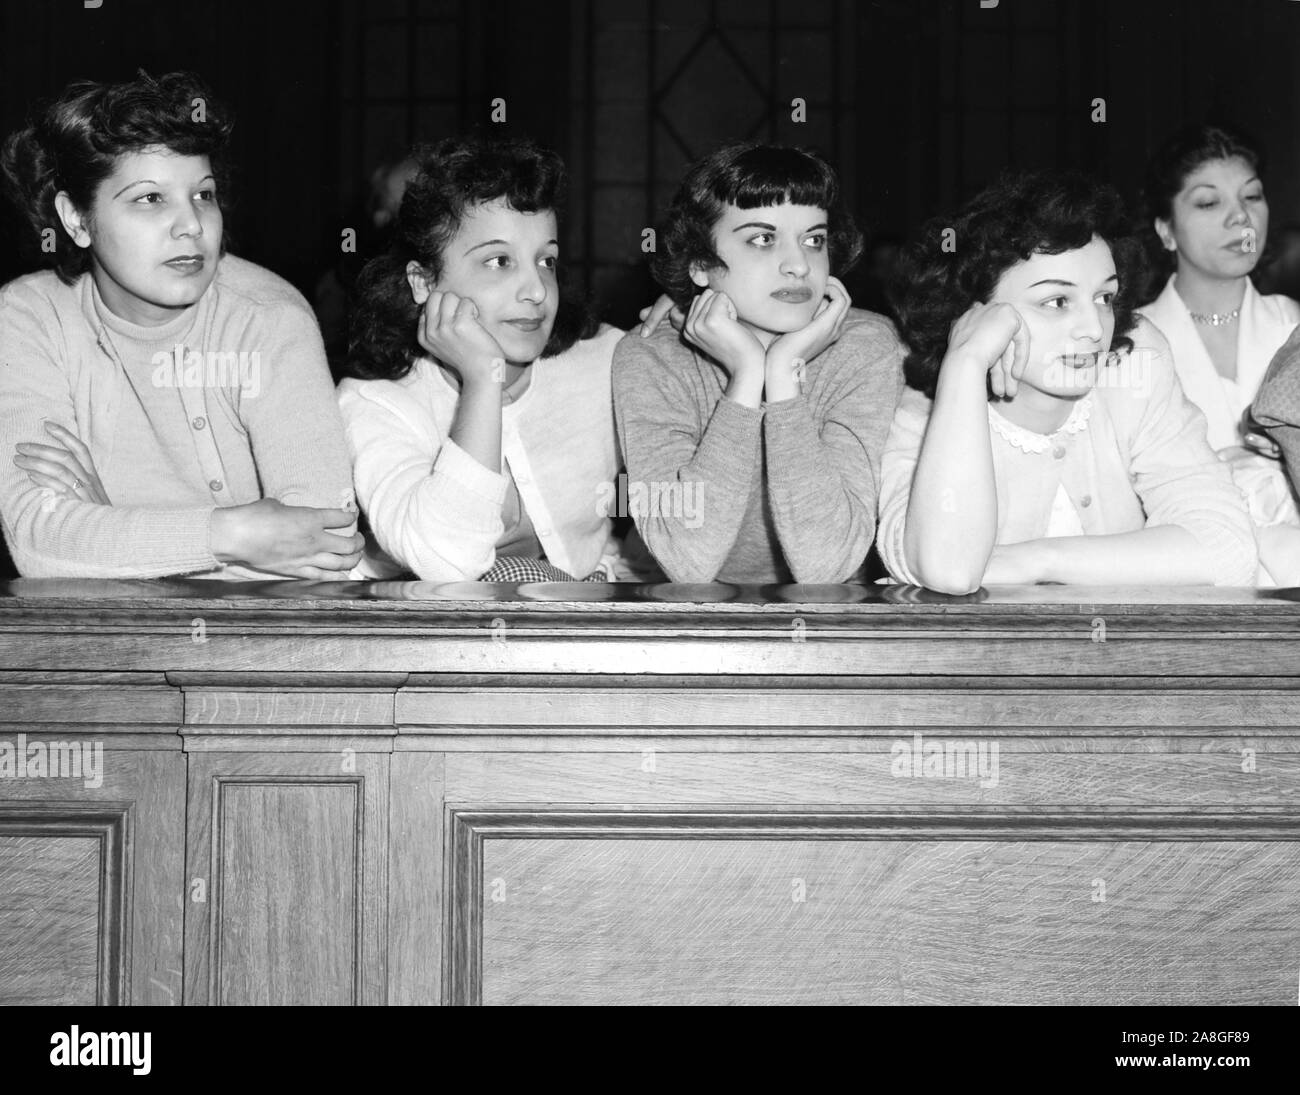 Las mujeres jóvenes en la fila delantera intensamente ver la audiencia del oficial de policía de Chicago Michael Moretti, quien fue acusado de asesinato en 1951. Foto de stock